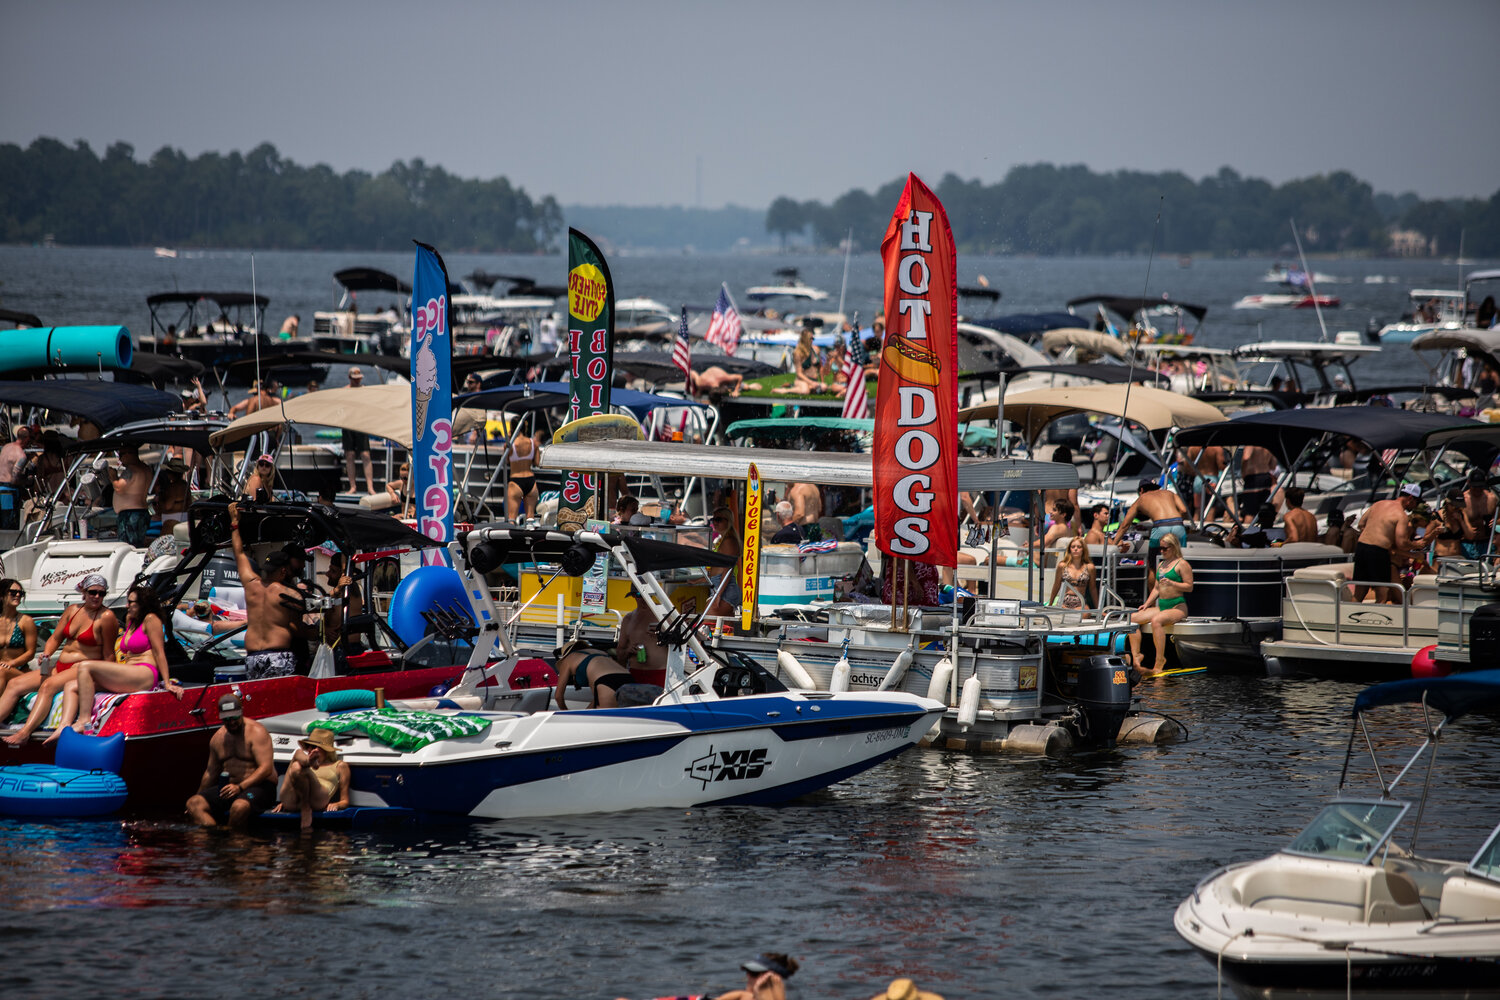 The SunDogs boat floats among the revelers at June’s Reggaetronic Lake Murray Music Festival.